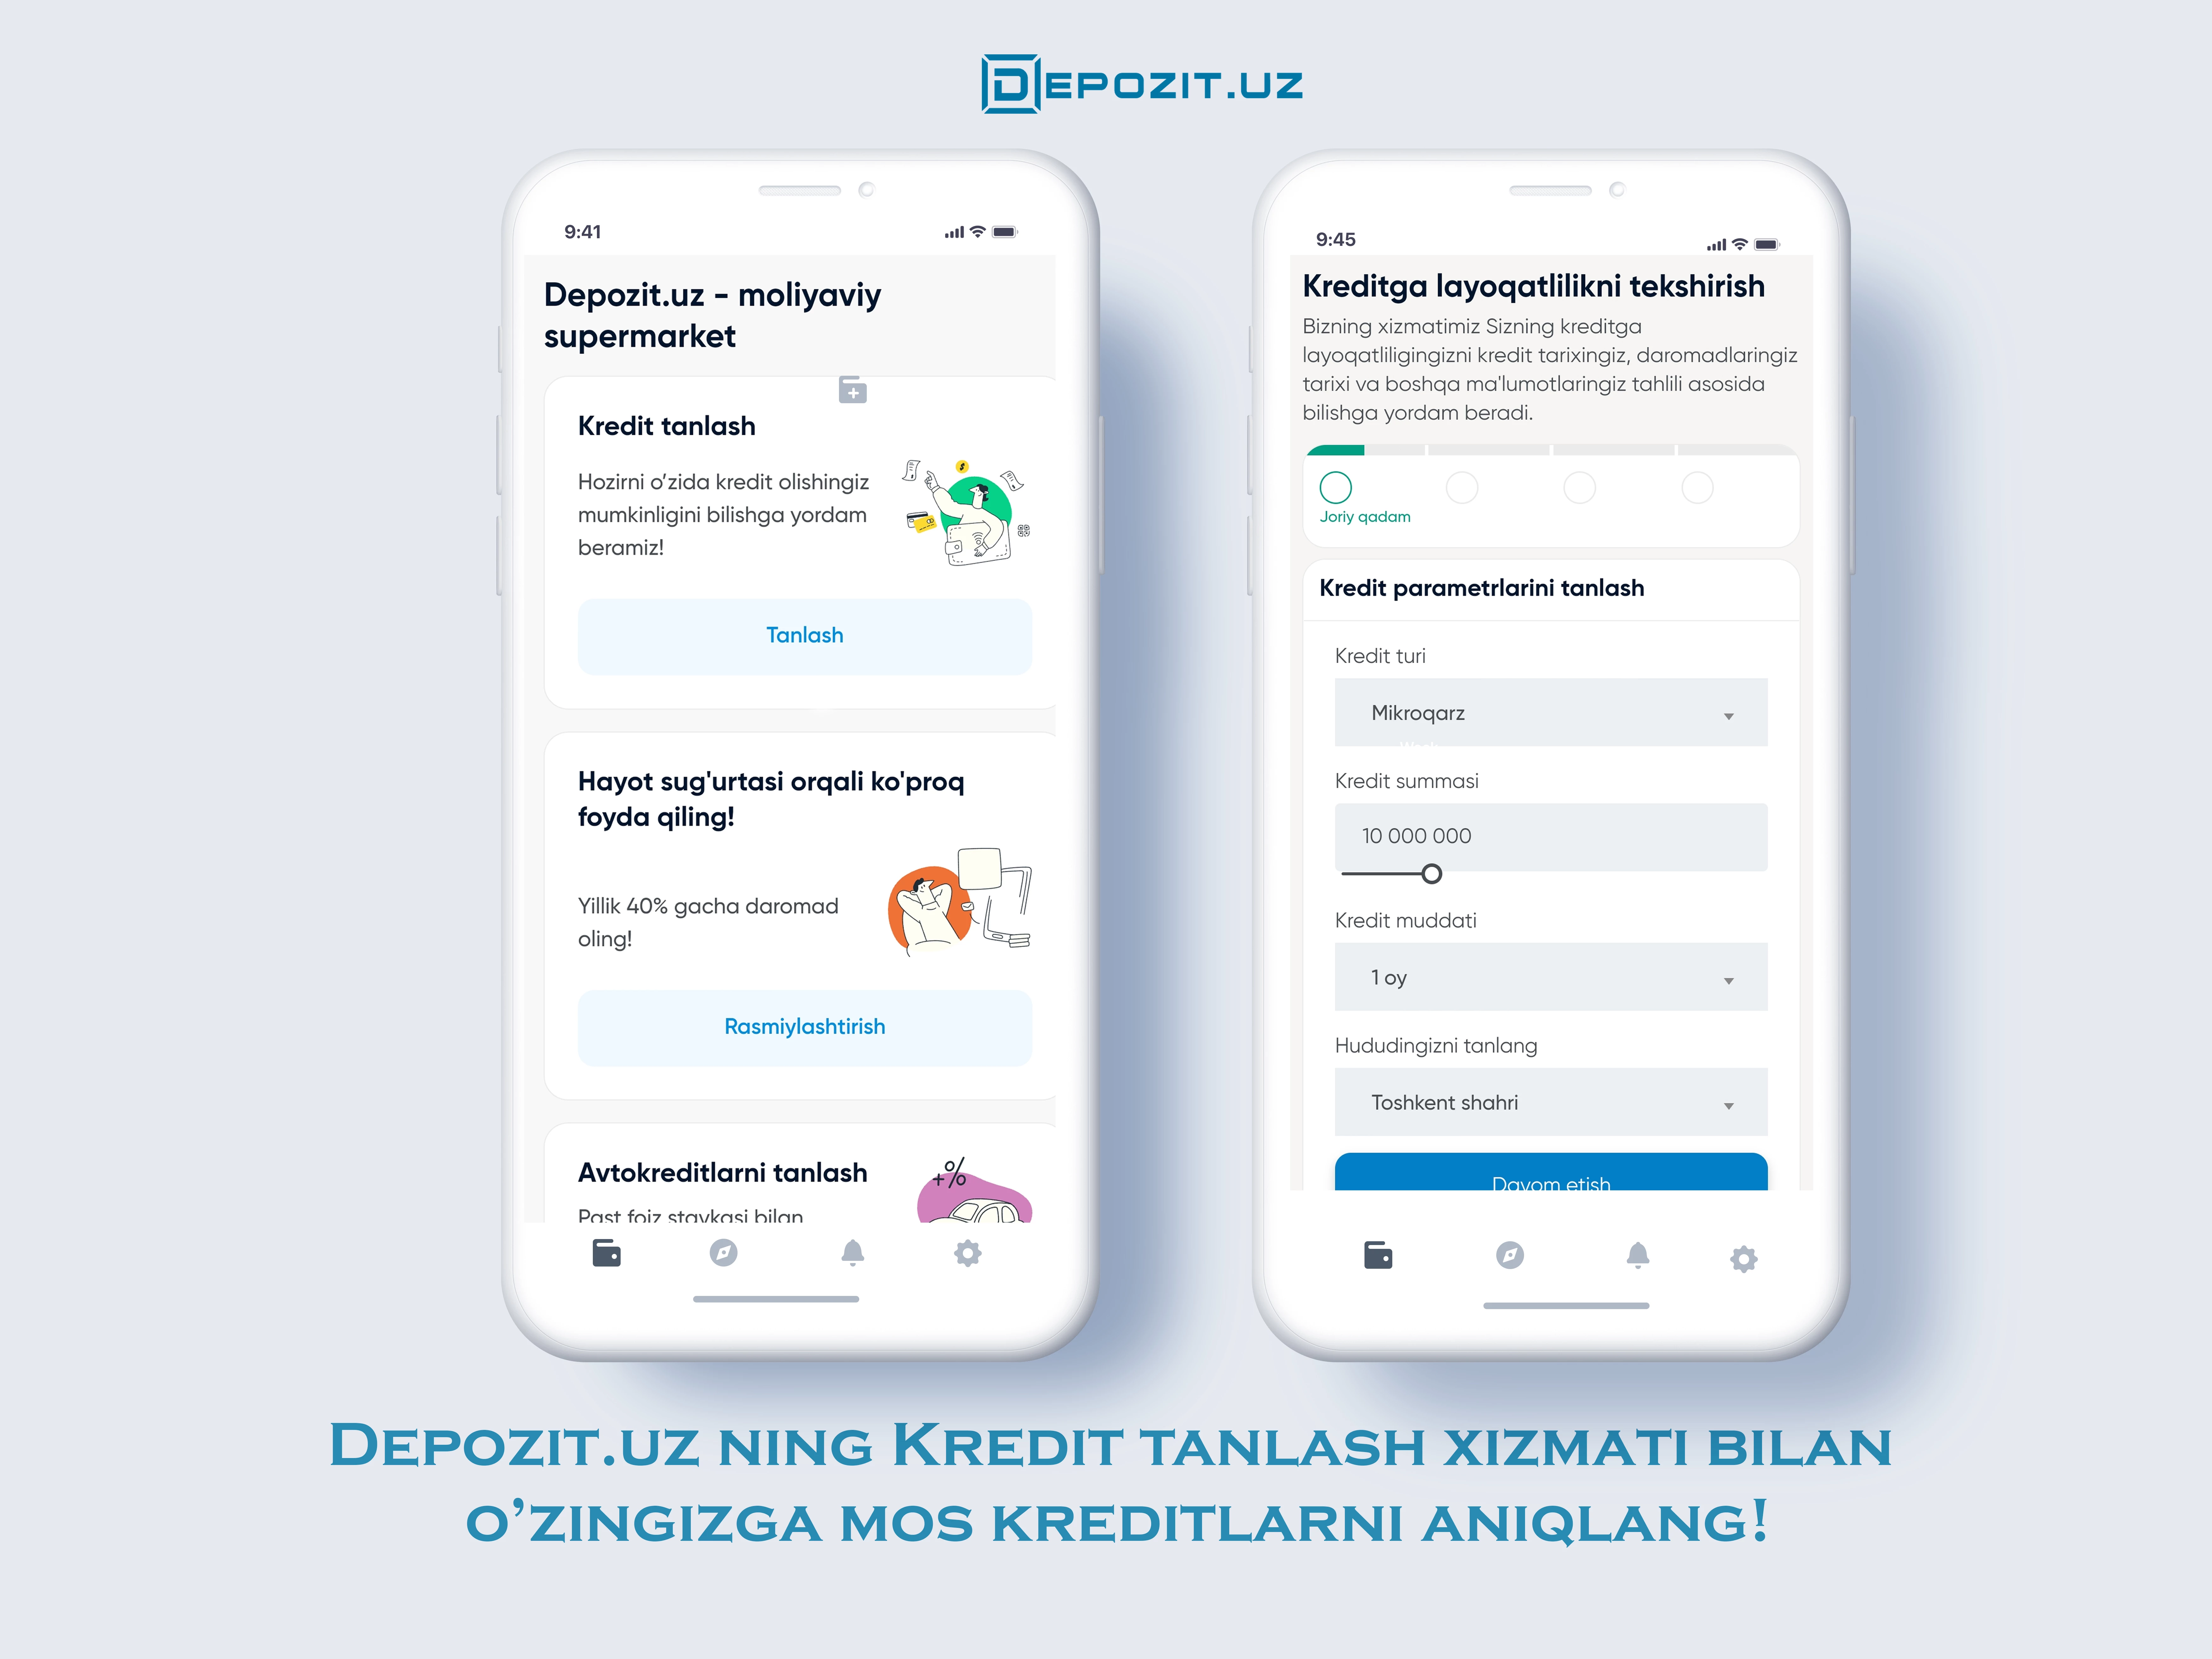 Выбирайте кредиты с услугой Подбора кредитов на сайте Depozit.uz!